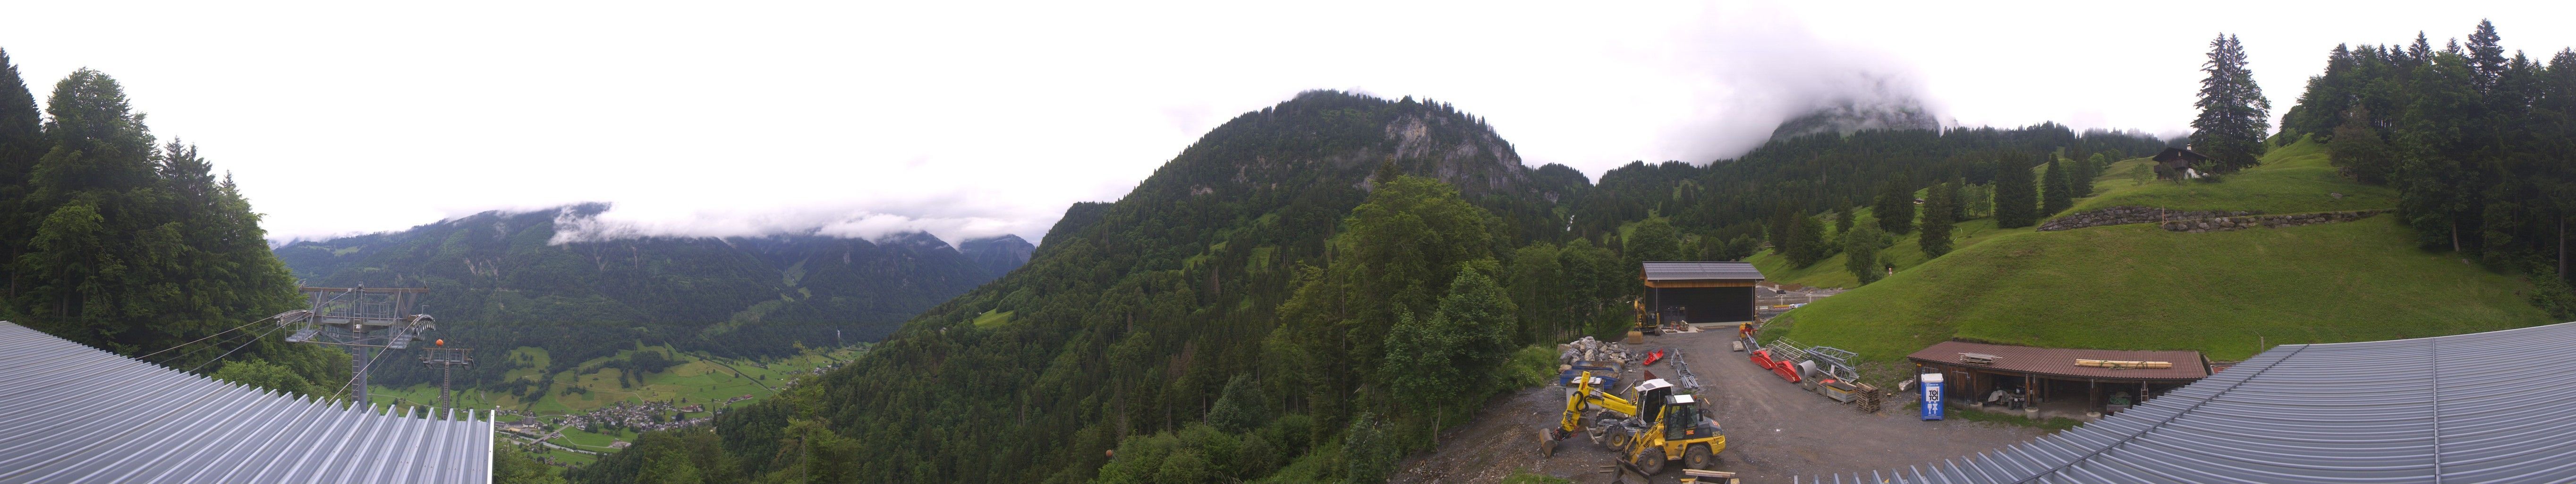 Brunnenberg